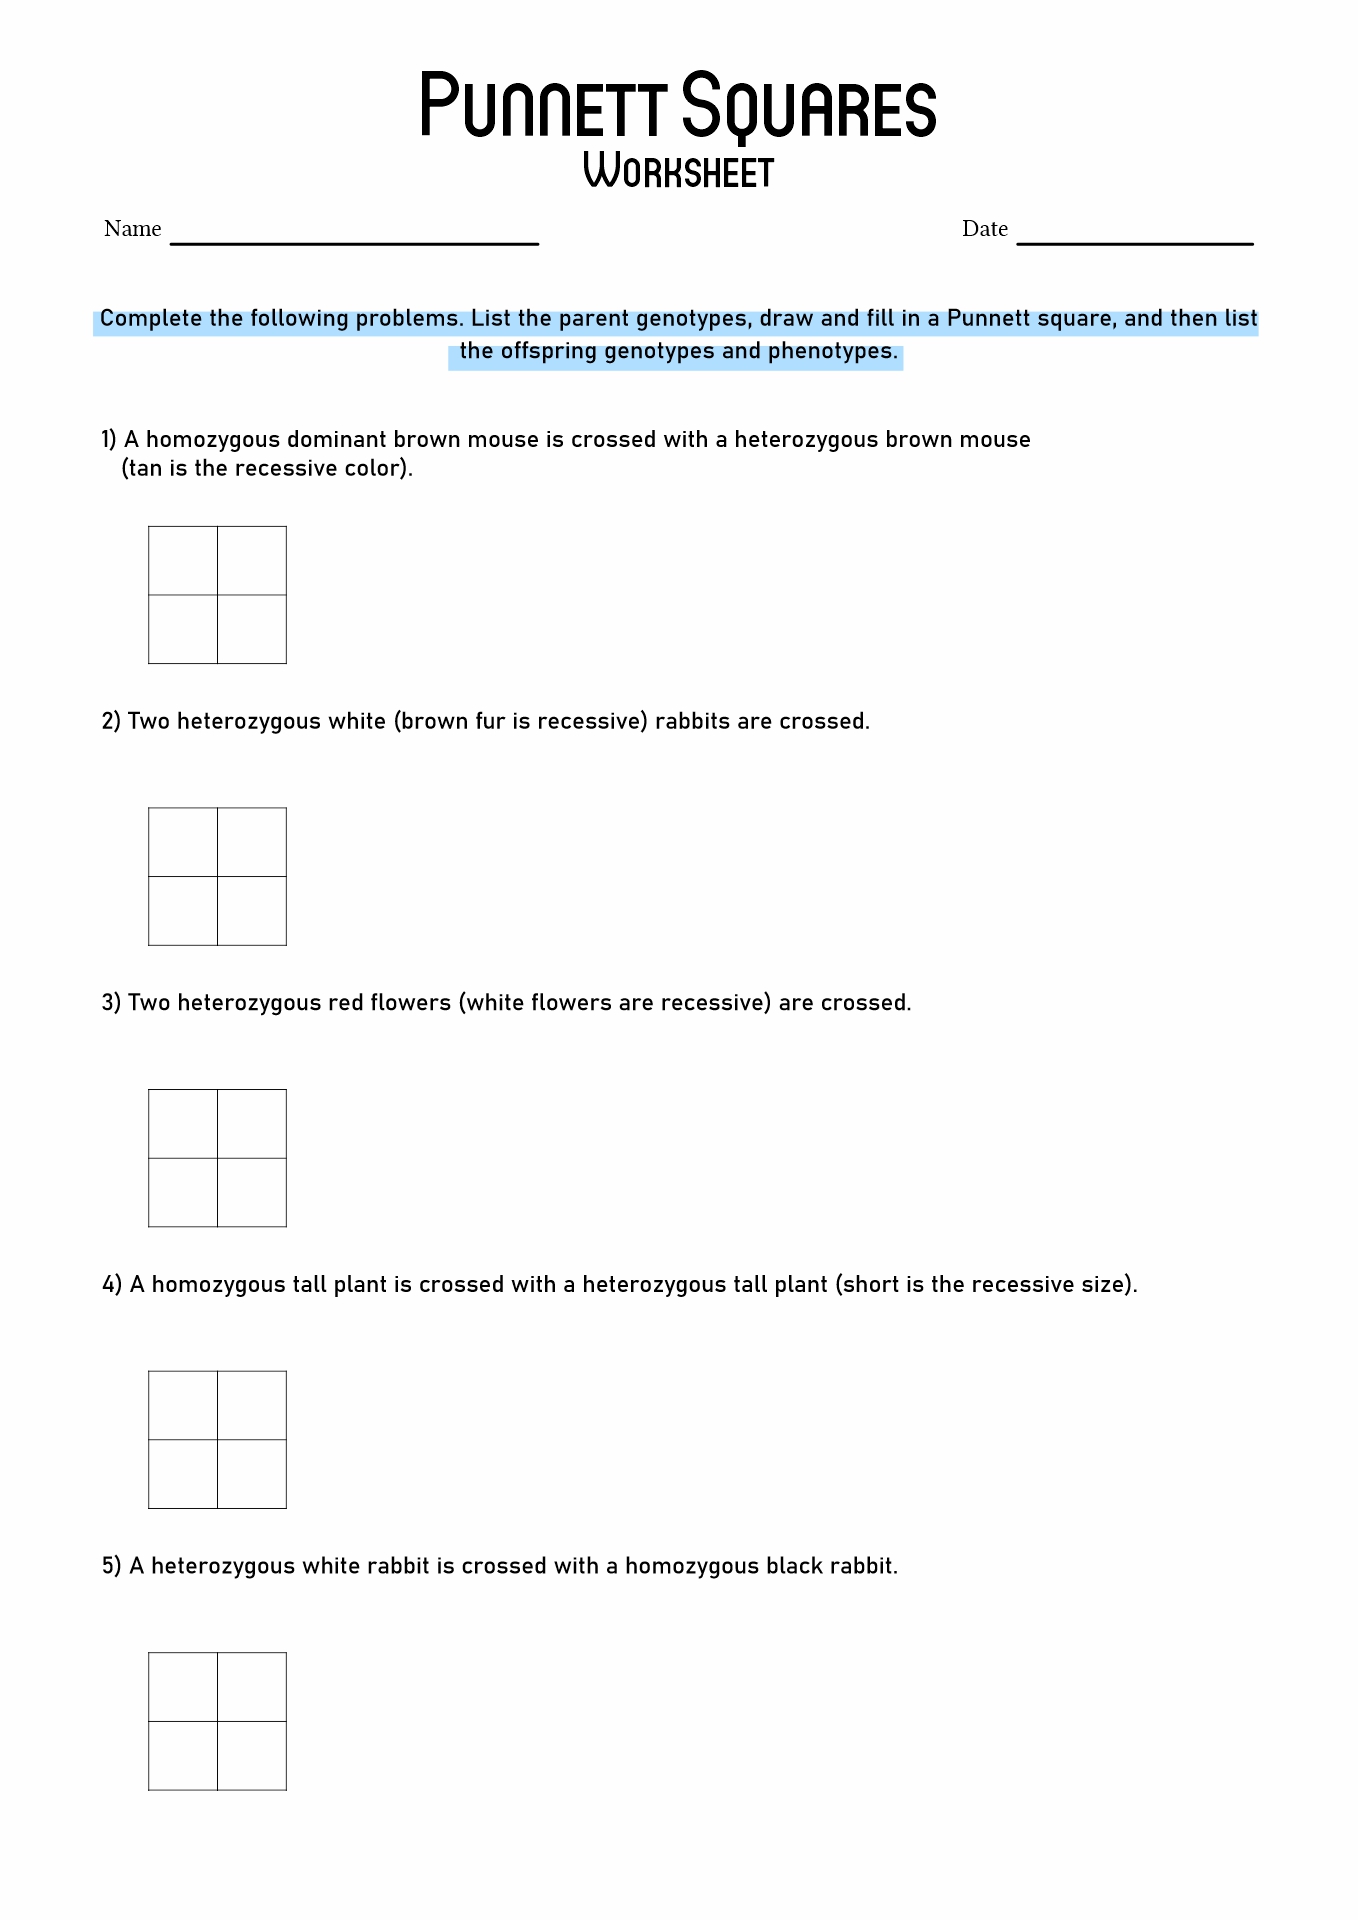 Punnett Square Worksheet Answers Image